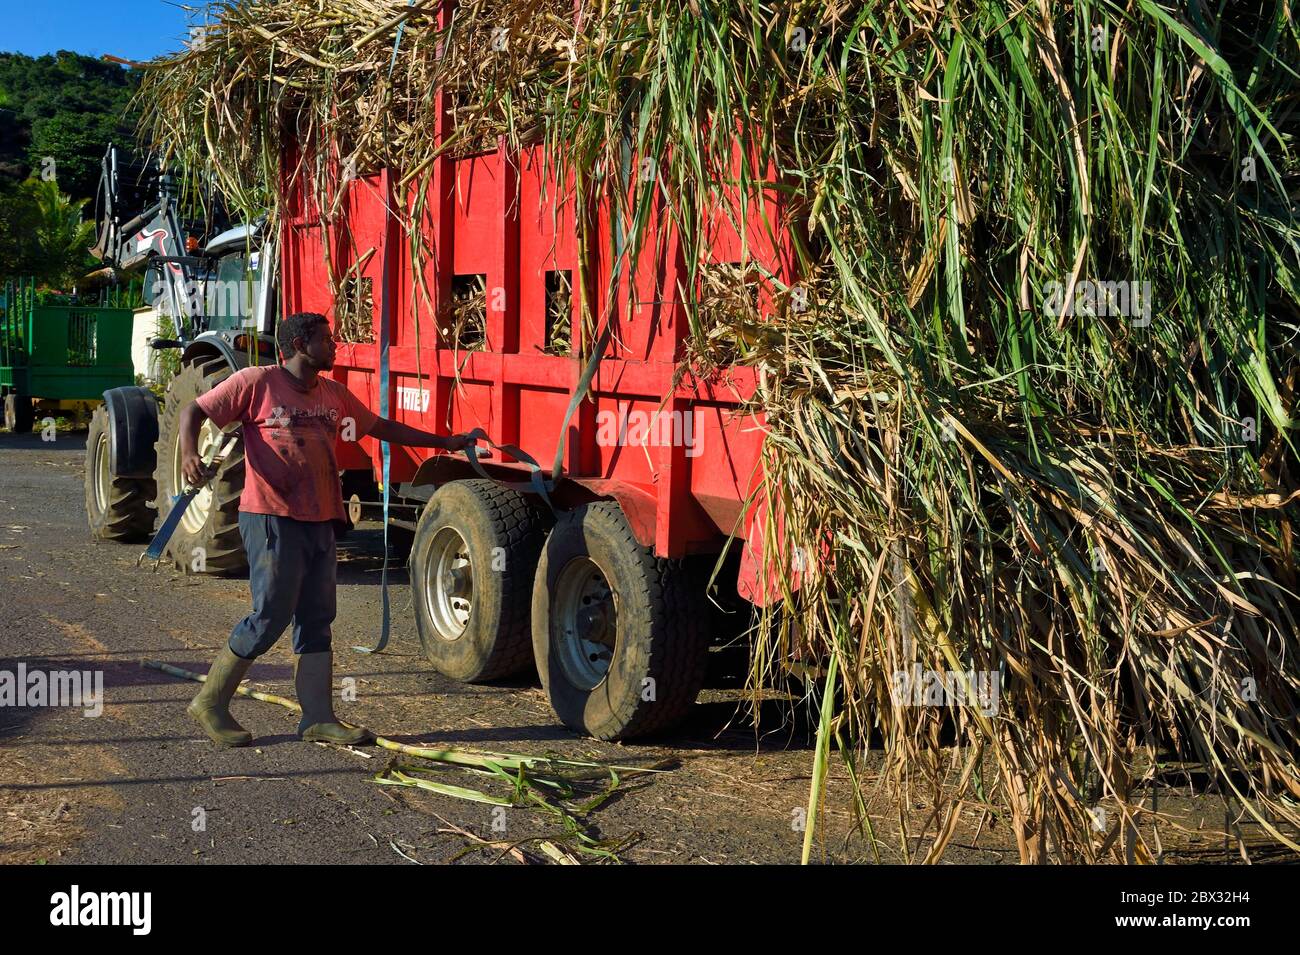 France, Ile de la Réunion (département français d'outre-mer), Saint-Pierre, Grands Bois, l'un des 11 centres de réception et de collecte de canne à sucre également appelés Balance, les tracteurs apportent la canne des champs en remorques Banque D'Images